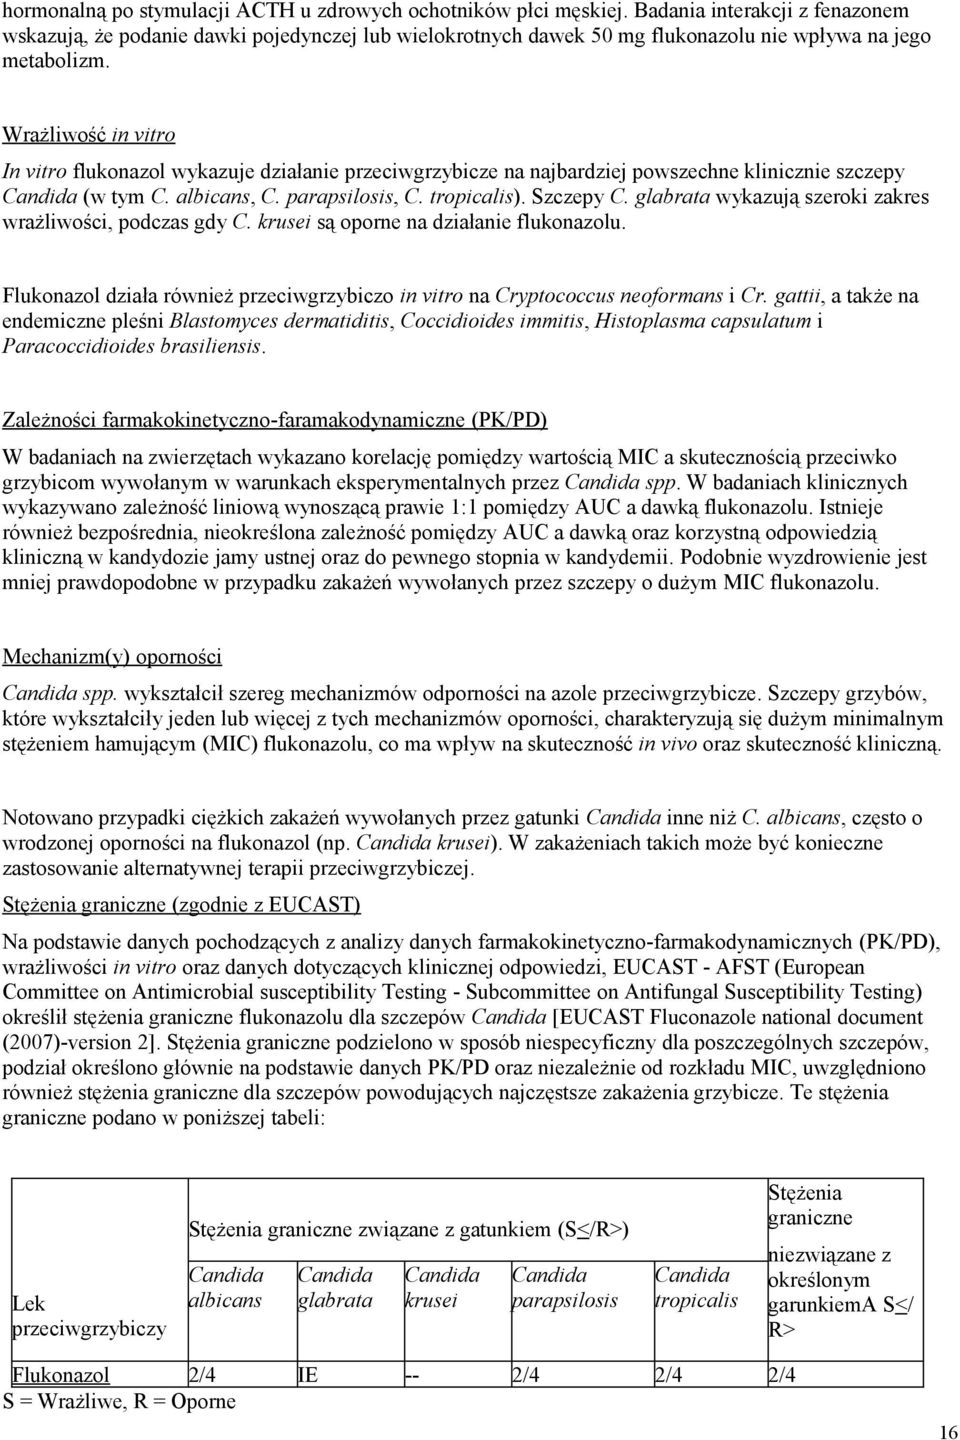 Wrażliwość in vitro In vitro flukonazol wykazuje działanie przeciwgrzybicze na najbardziej powszechne klinicznie szczepy Candida (w tym C. albicans, C. parapsilosis, C. tropicalis). Szczepy C.